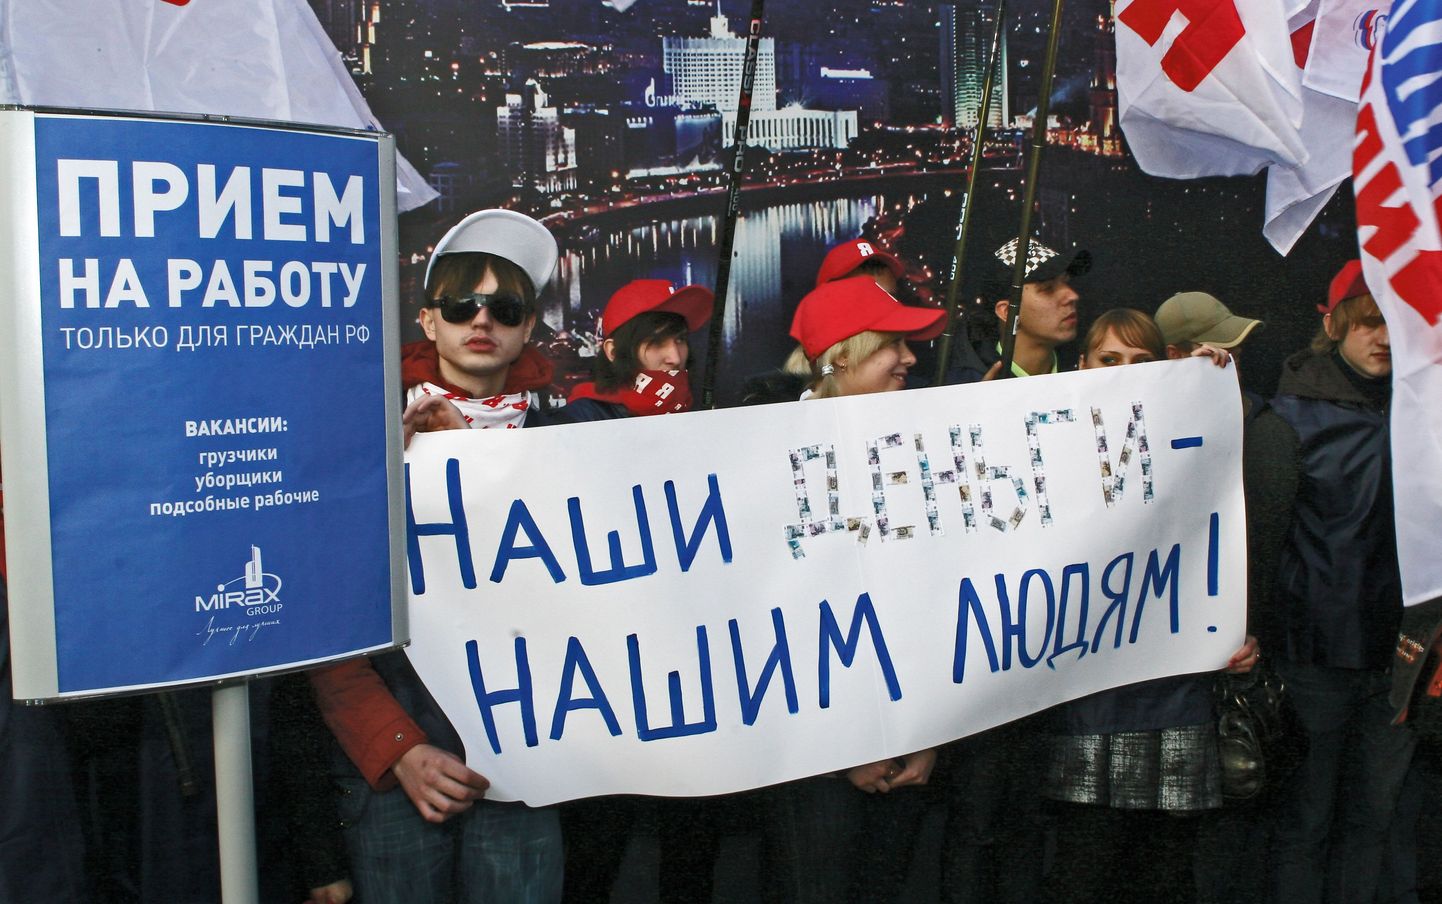 «Meie raha meie inimestele». Vene noorte 1.novembril korraldatud aktsioon Moskvas, kus nõuti tööd üksnes Vene kodanikele.